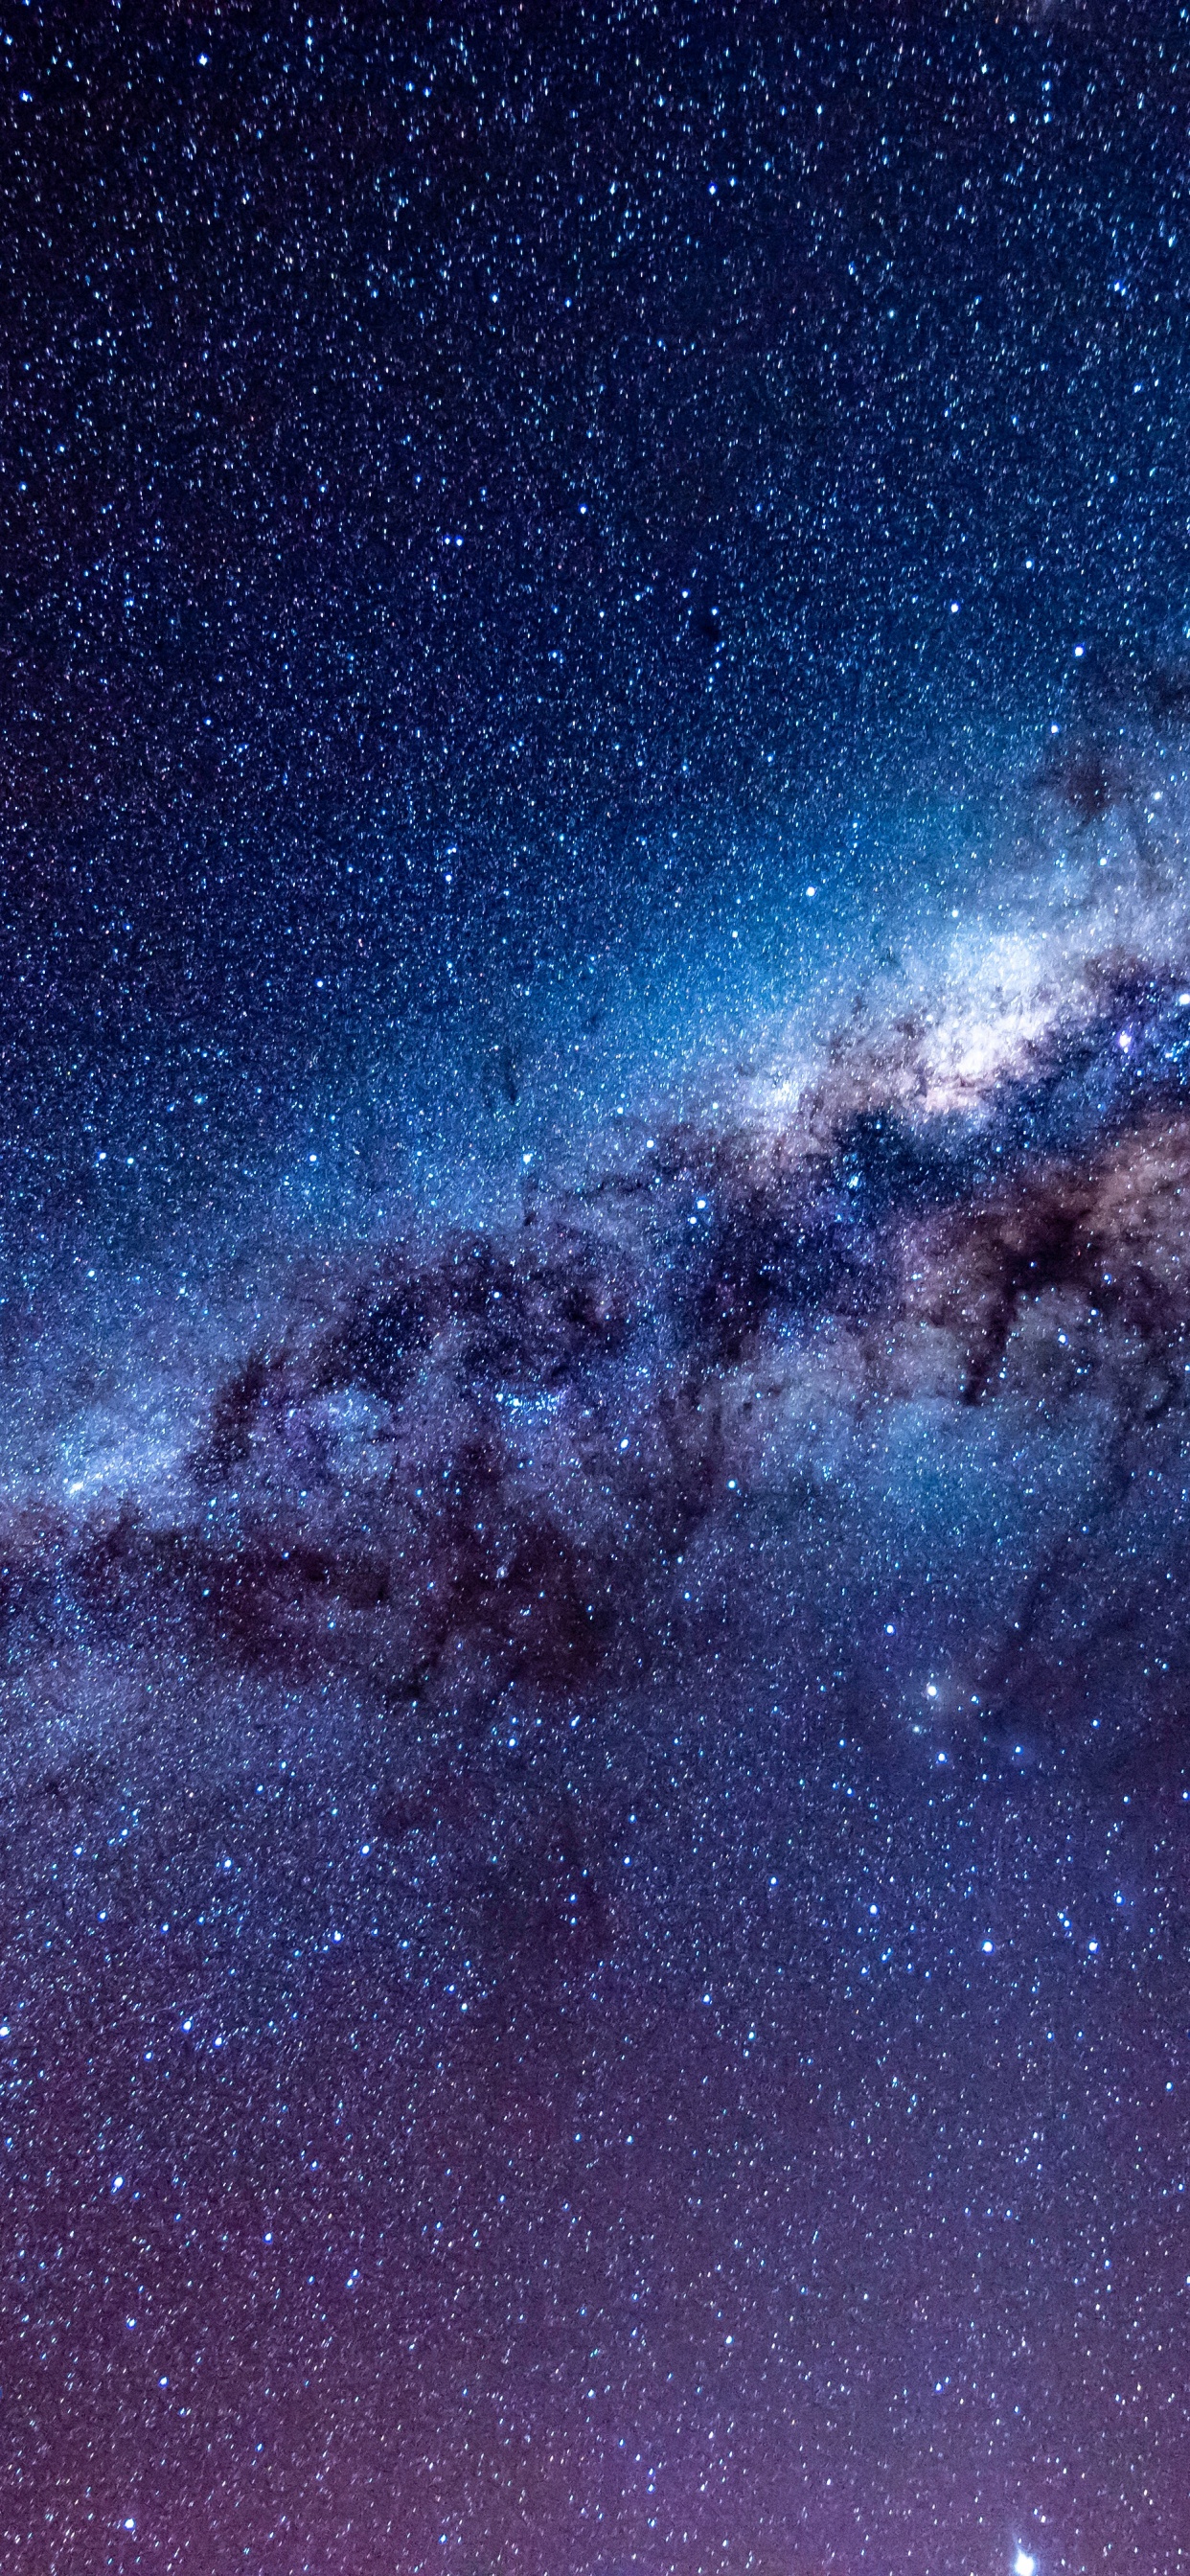 银河系, 天文学, 宇宙, 明星, 夜晚的天空 壁纸 1242x2688 允许